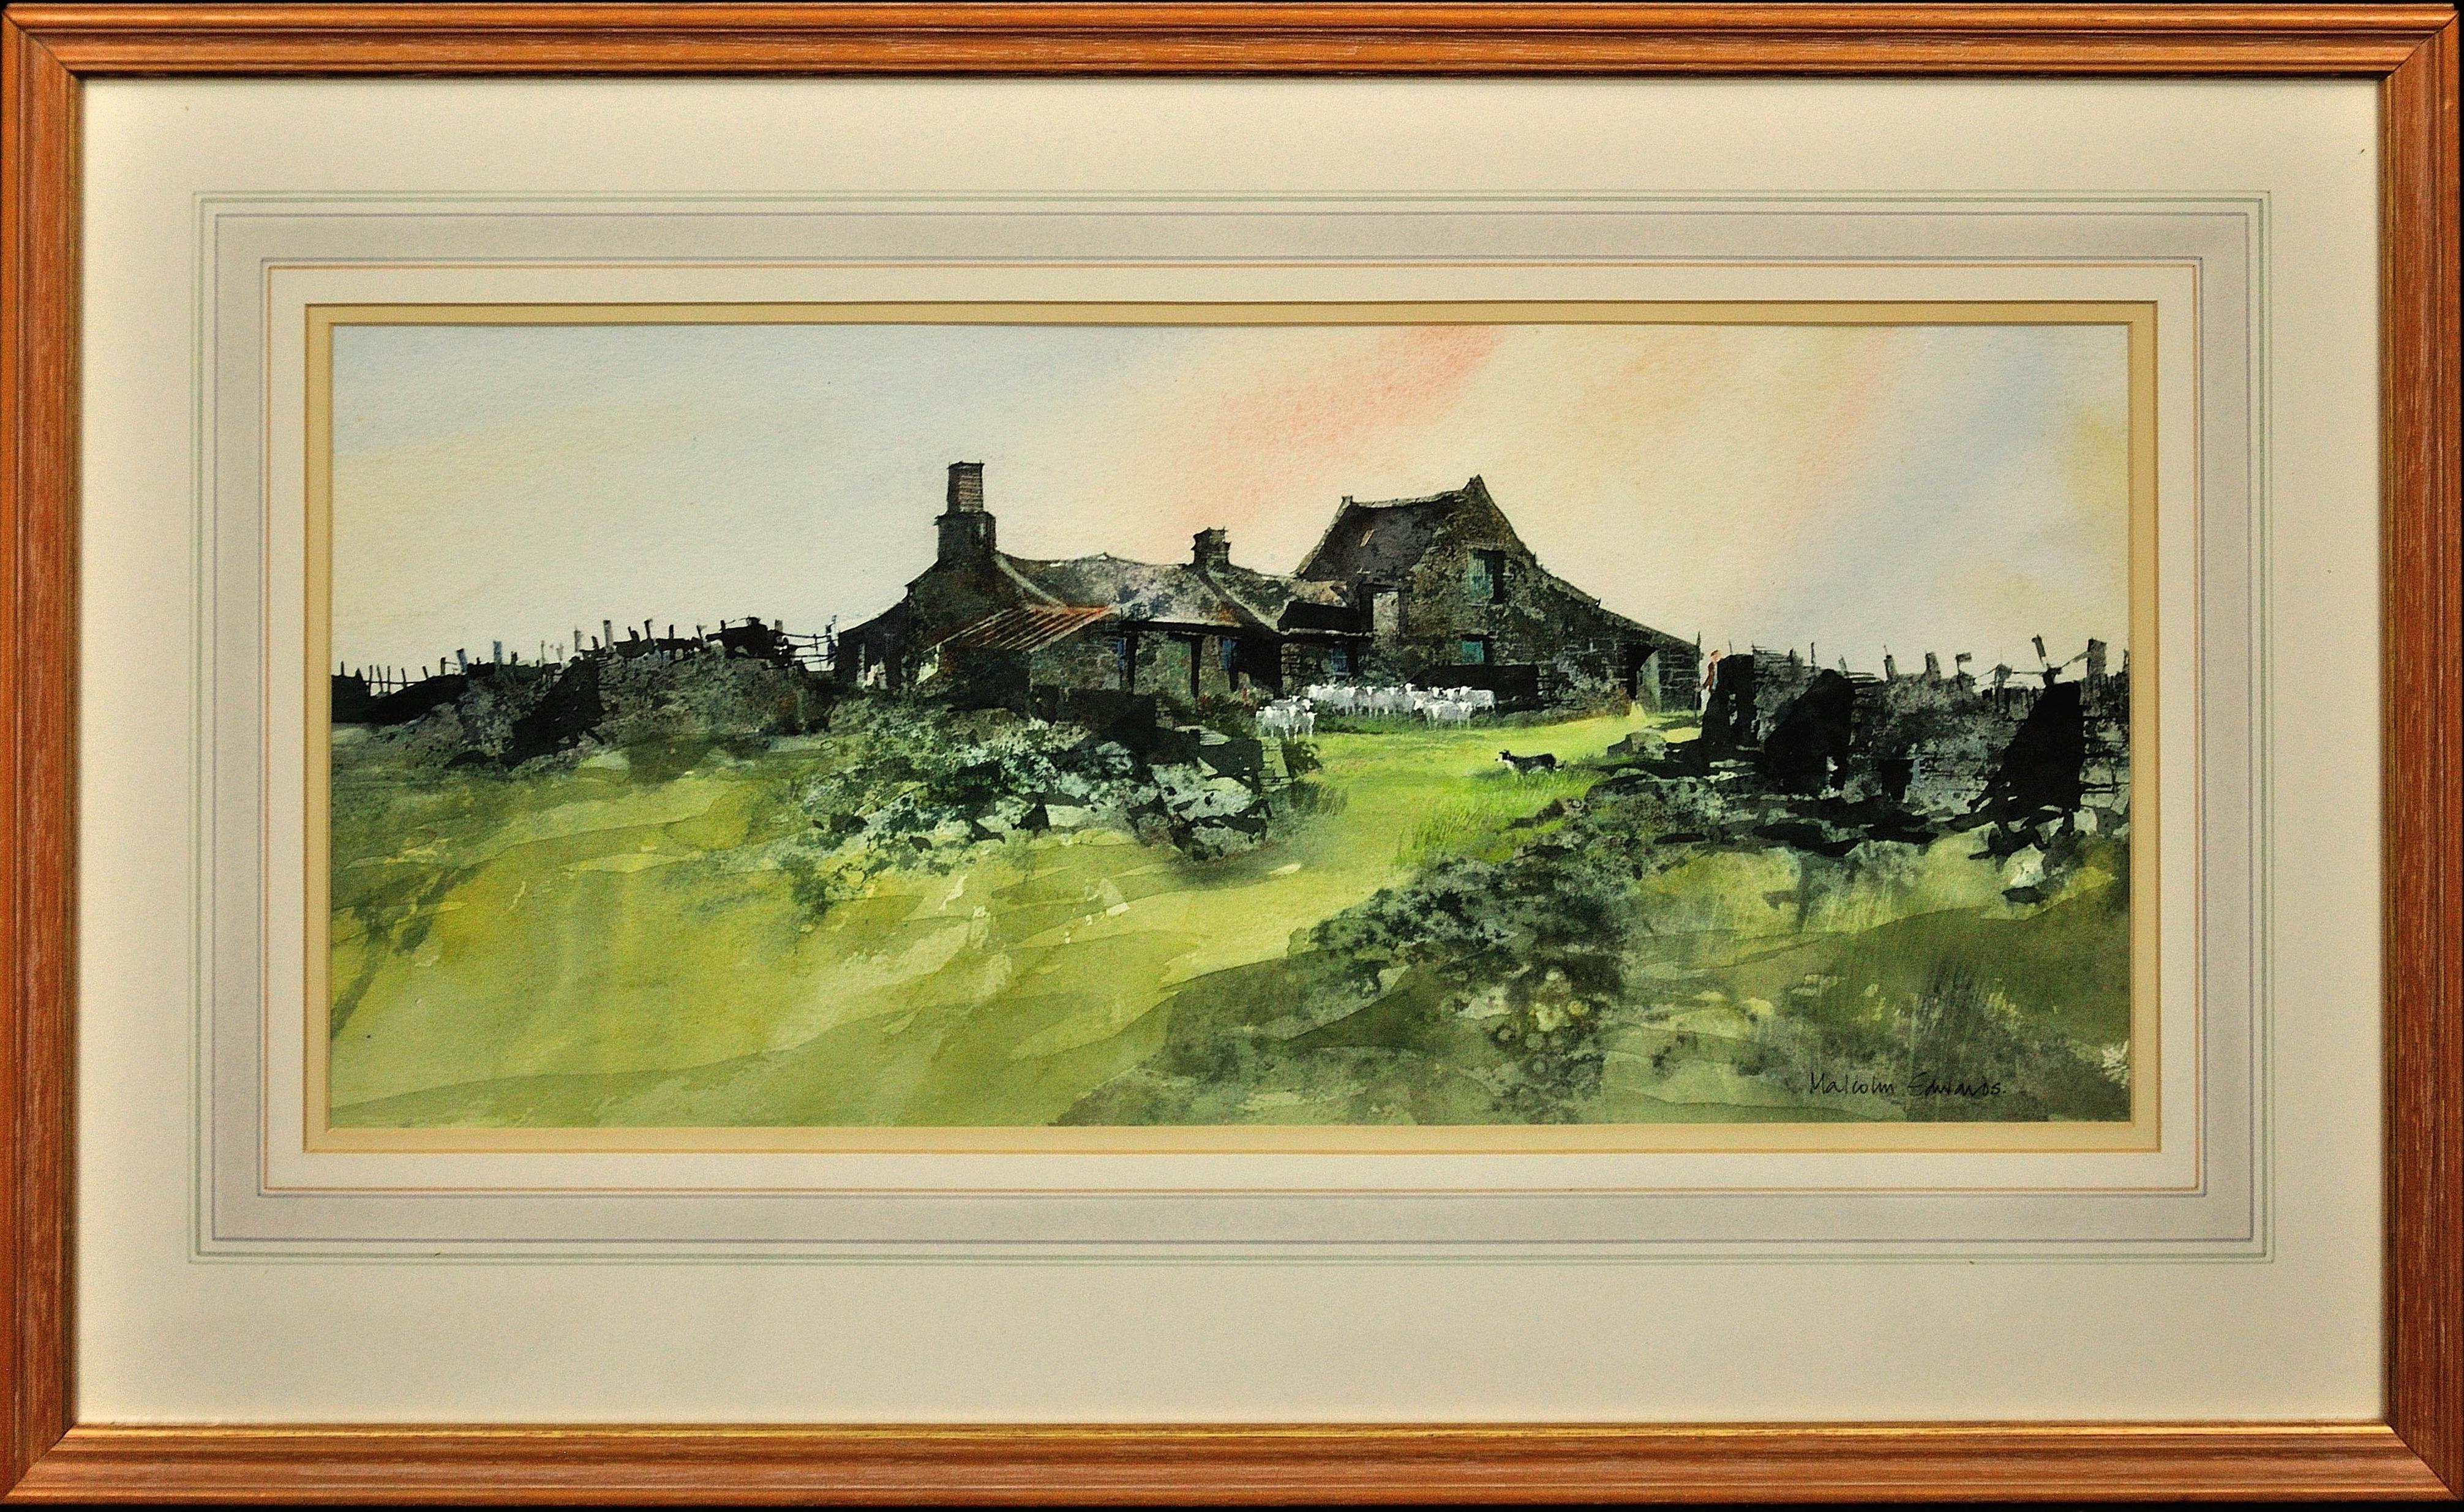 at　Original　Bardsey　Sale　Landscape　Welsh　For　William　1stDibs　Selwyn　Watercolor.　–　Swnt　Enlli　Artist.　Sound,　Wales.